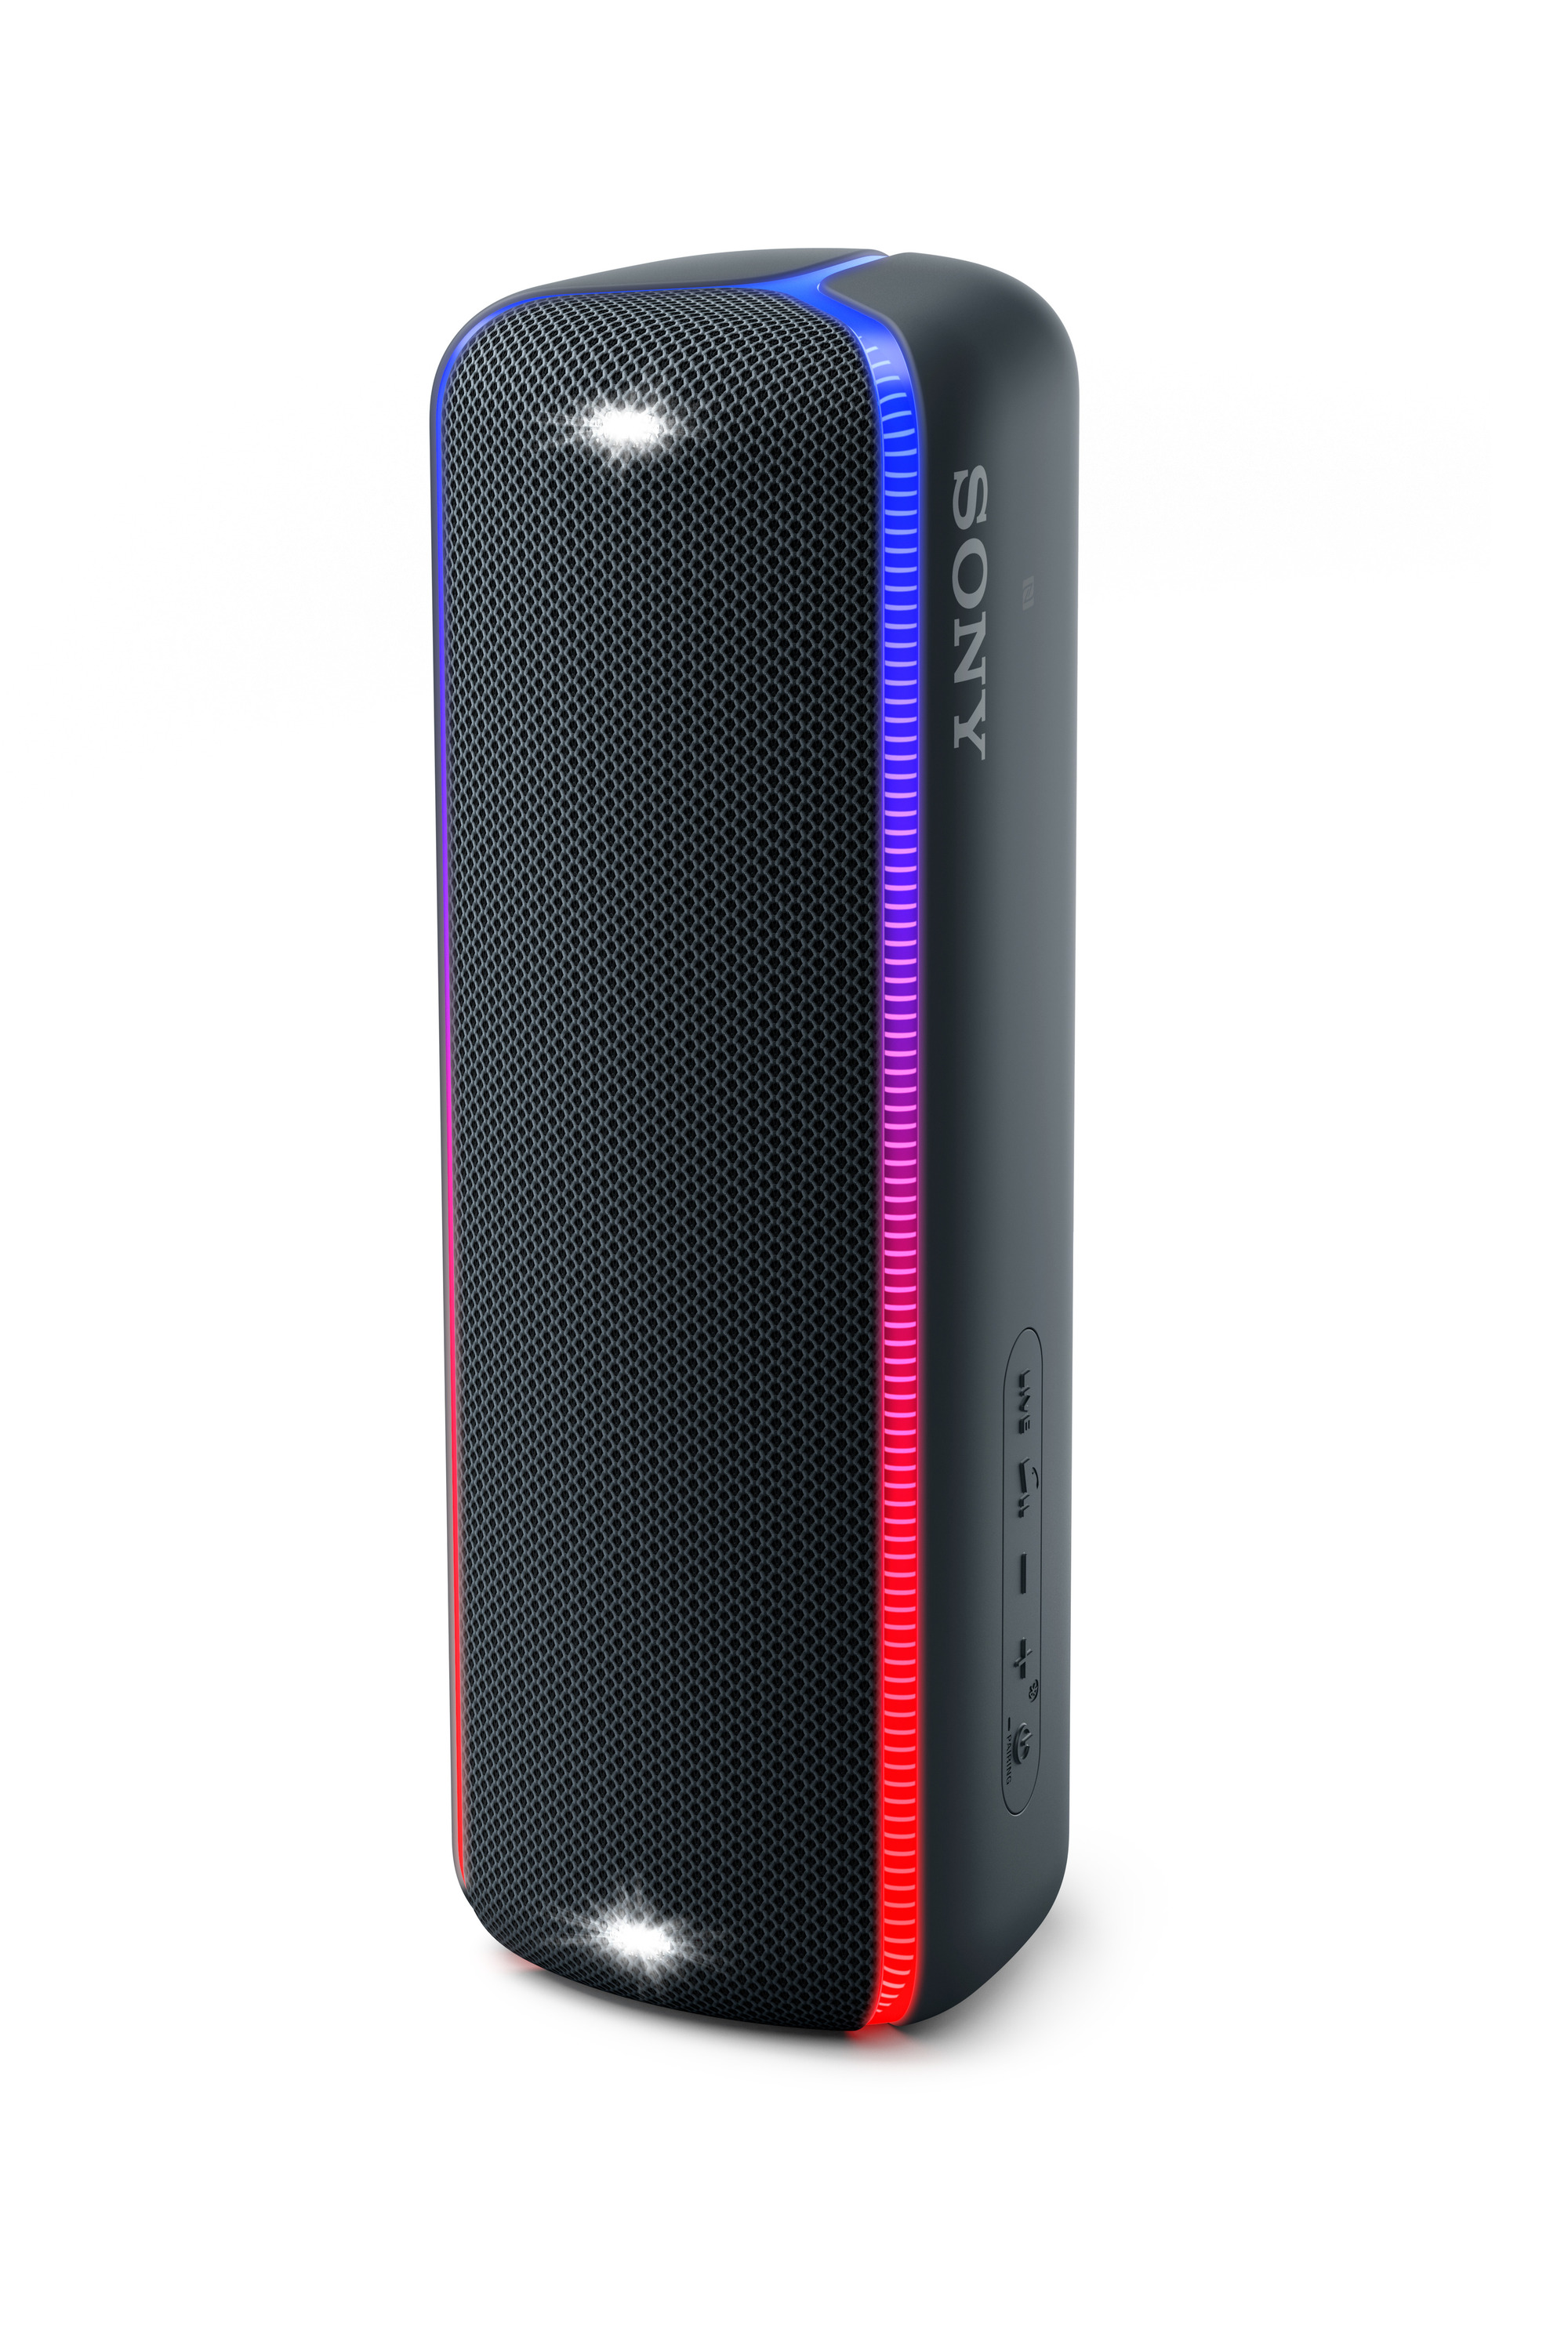 Loa Bluetooth Sony SRS-XB32 - Hàng chính hãng